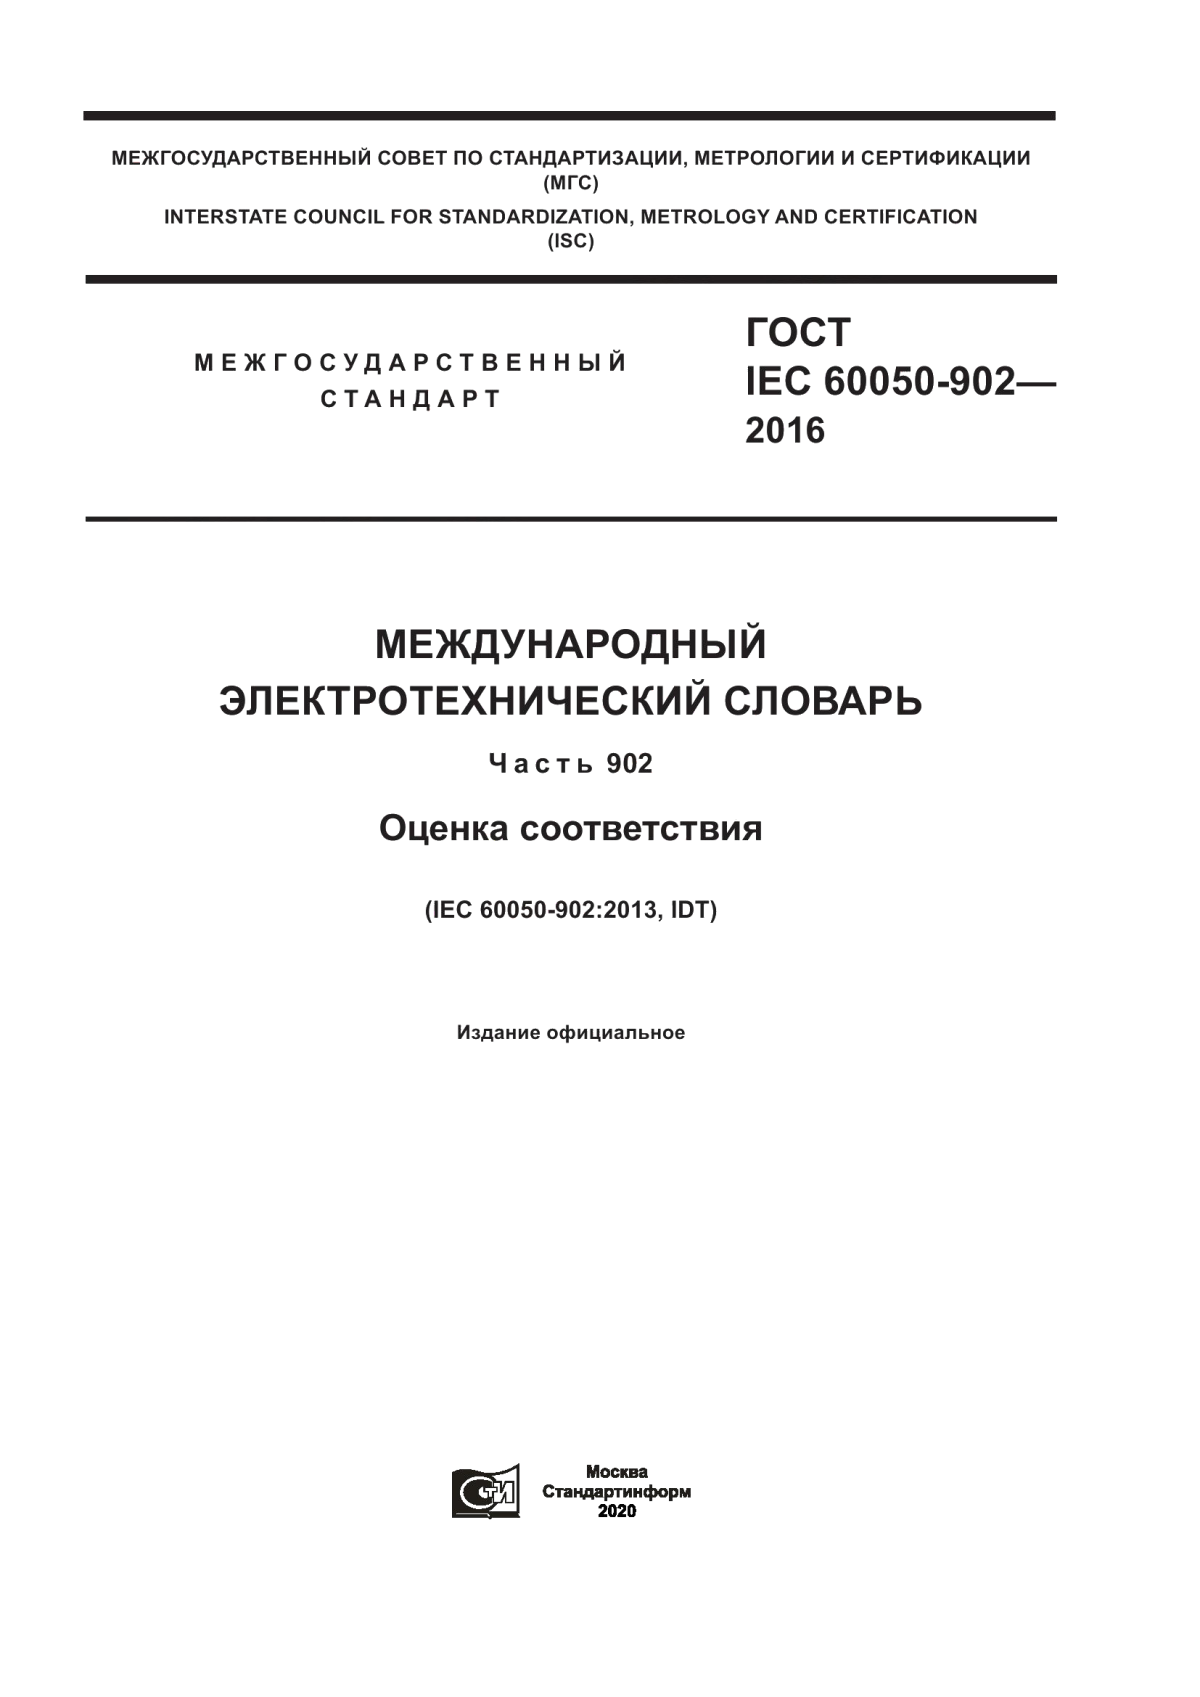 ГОСТ IEC 60050-902-2016 Международный электротехнический словарь. Глава 902. Оценка соответствия